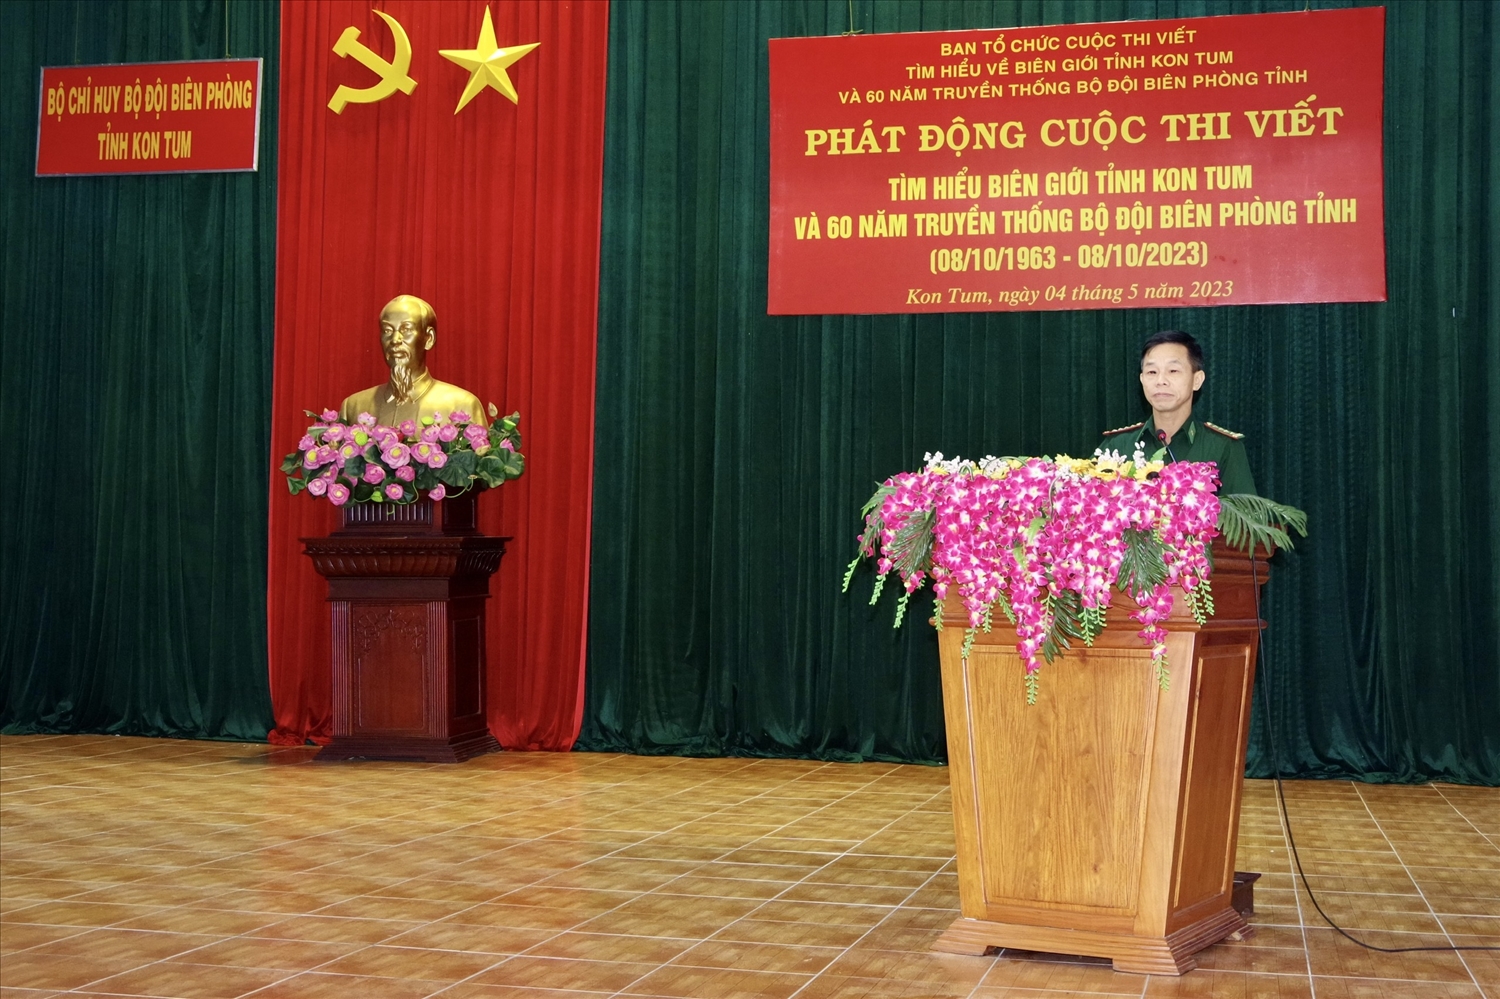 Đại tá Phạm Cảnh Toàn – Phó Chính ủy BĐBP tỉnh Kon Tum phát biểu tại lễ phát động